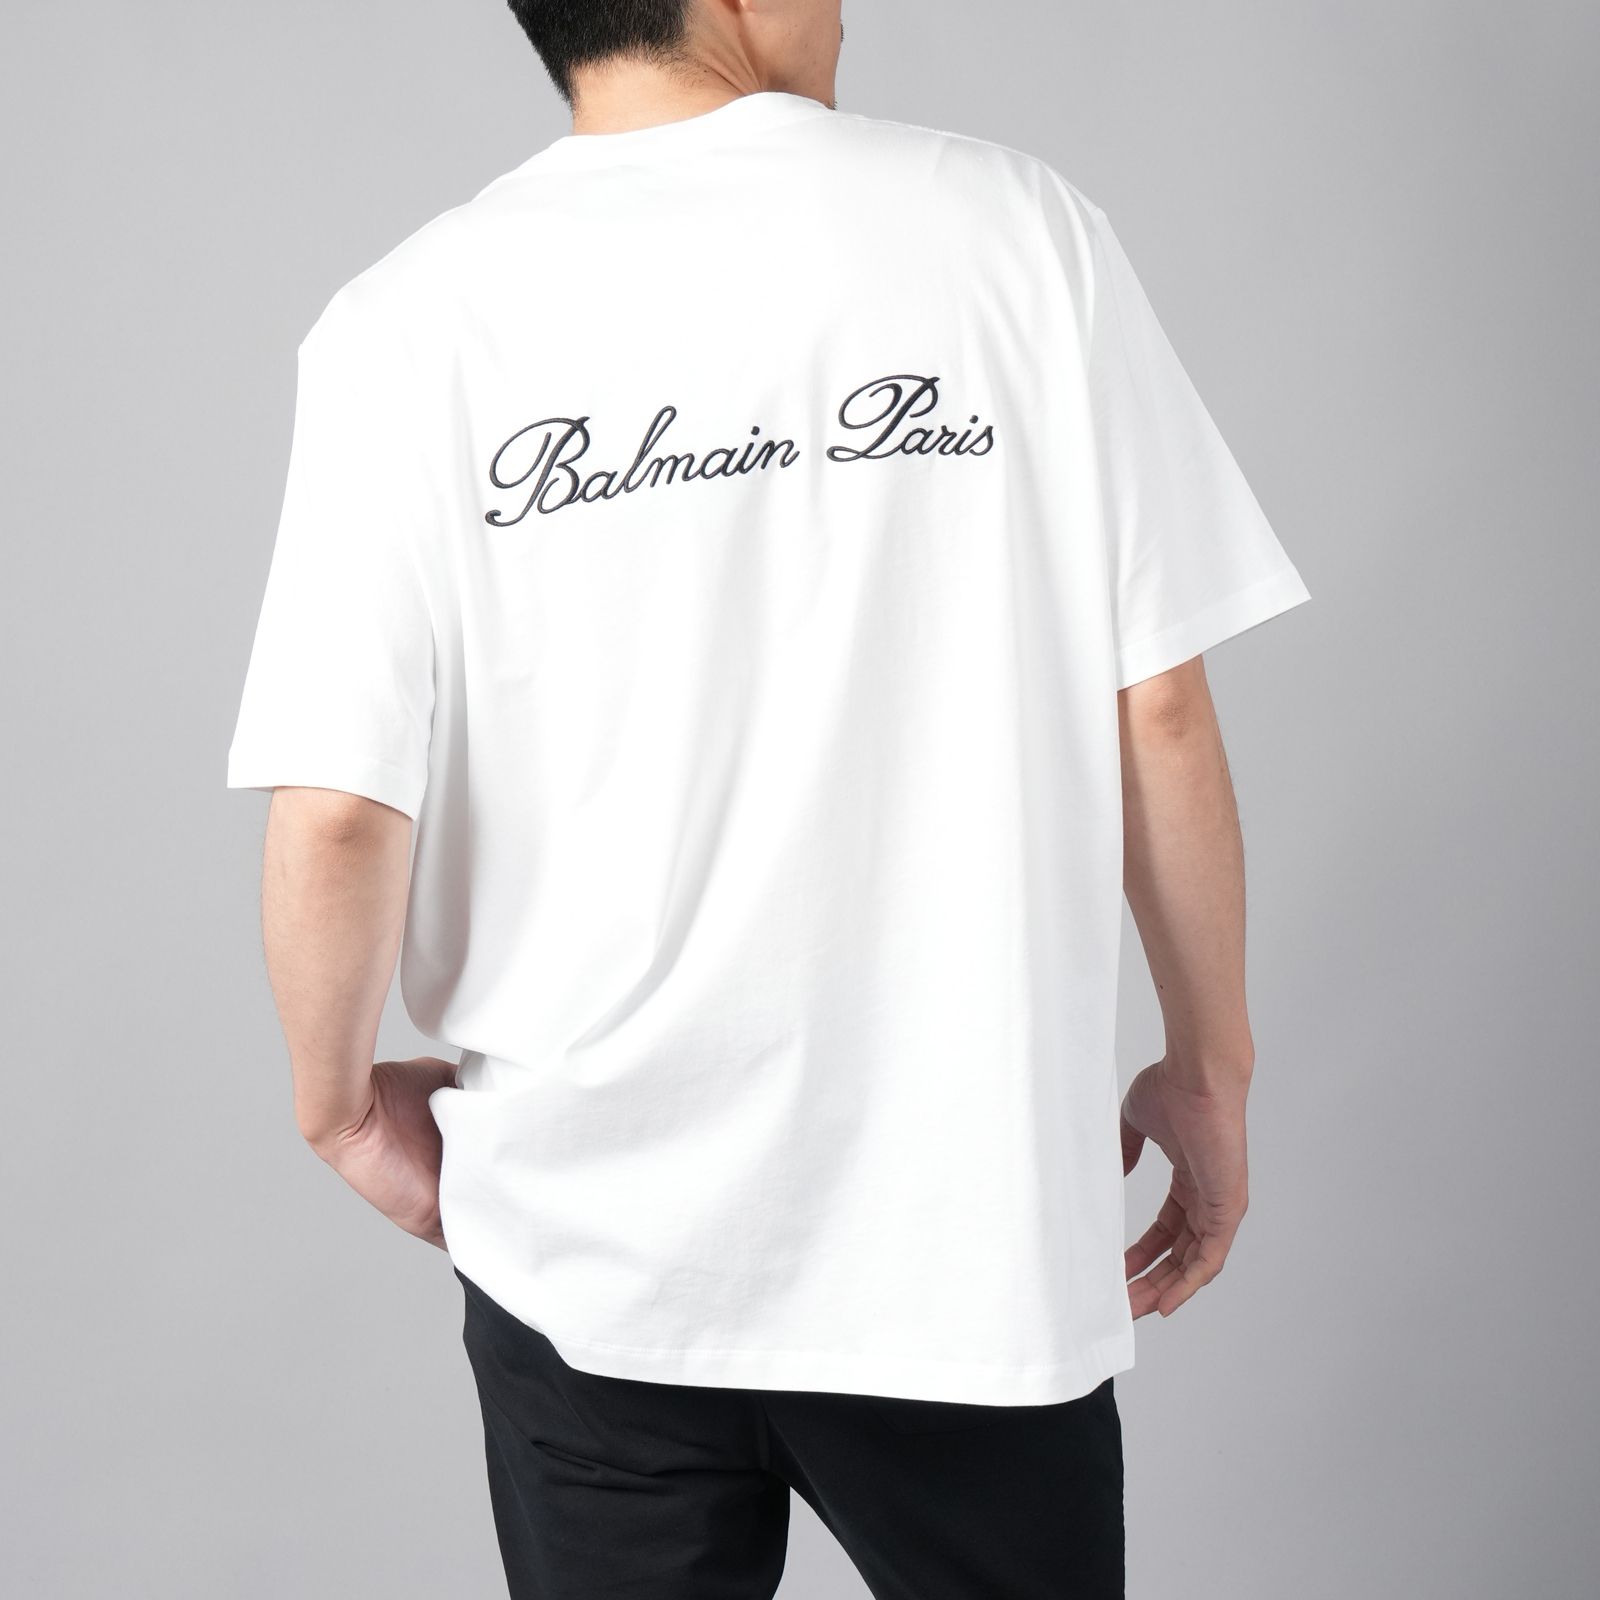 SALE／37%OFF 稀少 楽天市場】バルマン Tシャツ（メンズファッション）の通販 高級ブランド 25点 BALMAIN メンズのTシャツ・カットソー(長袖)の通販  バルマン バルマン 初期 ボーダーTシャツ メンズ